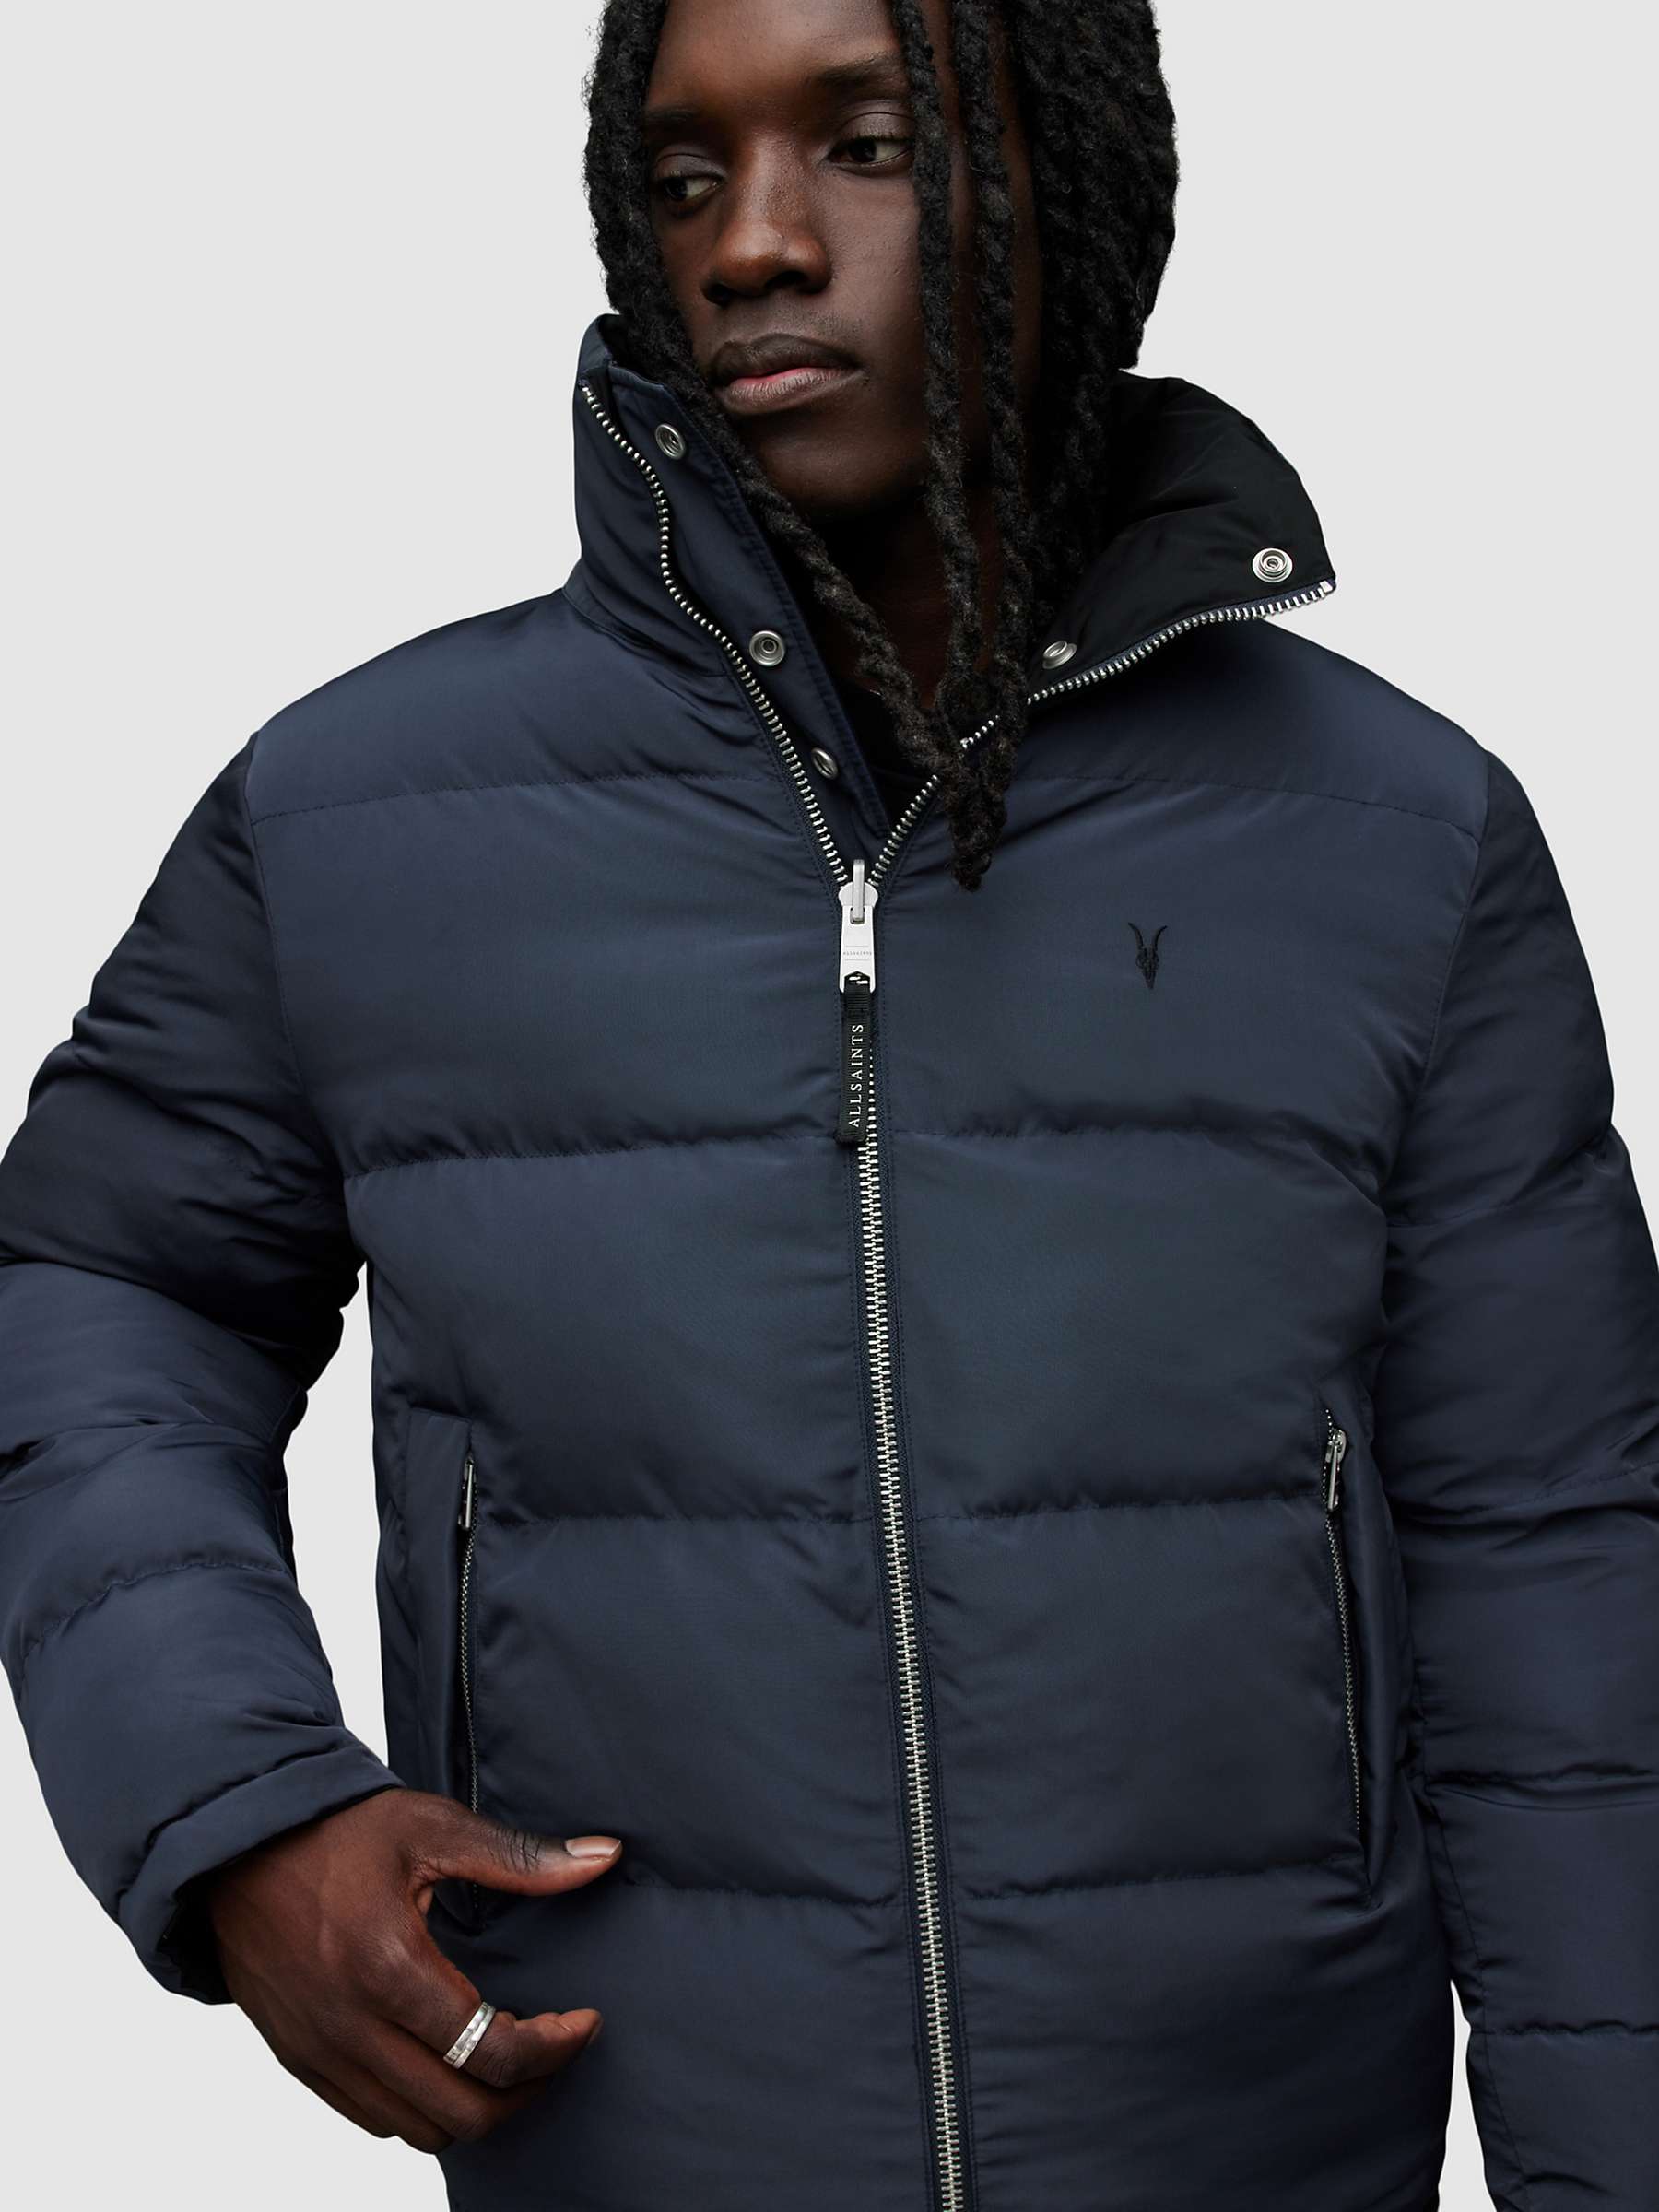 Buy AllSaints Novern Reversible Puffer Jacket, Black/Command Blue Online at johnlewis.com